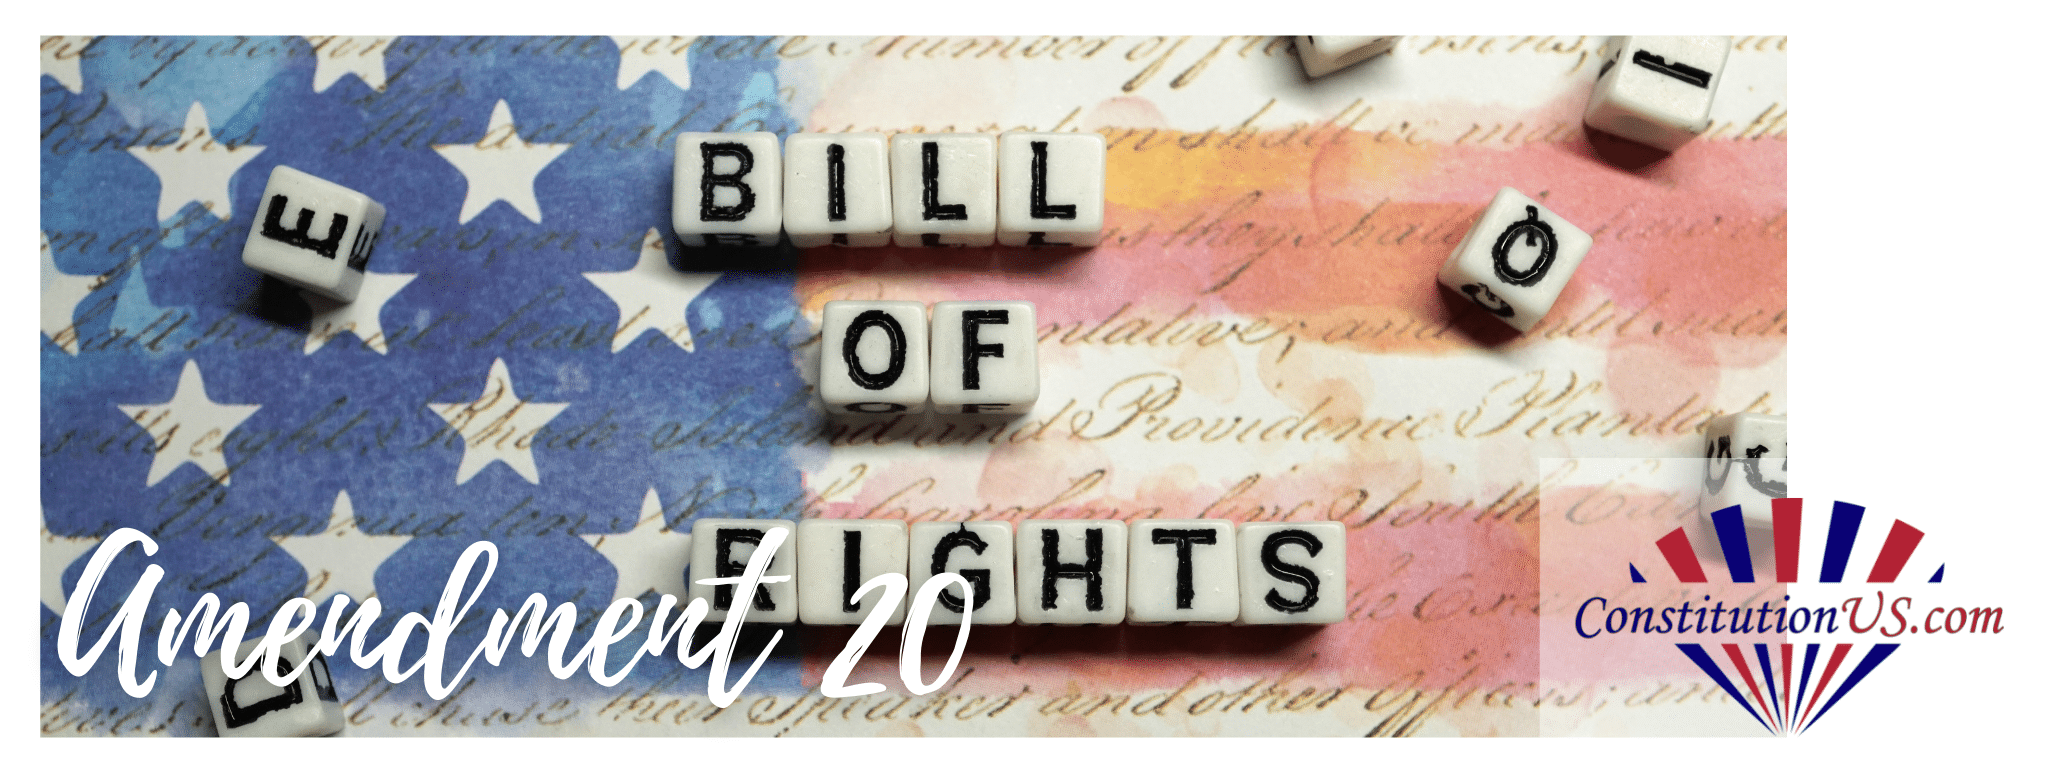 Bill of rights 20 bill of rights 20 bill of rights 20 bill of rights 20 bill of rights 20 bill of rights 20 bill of rights 20 bill of.